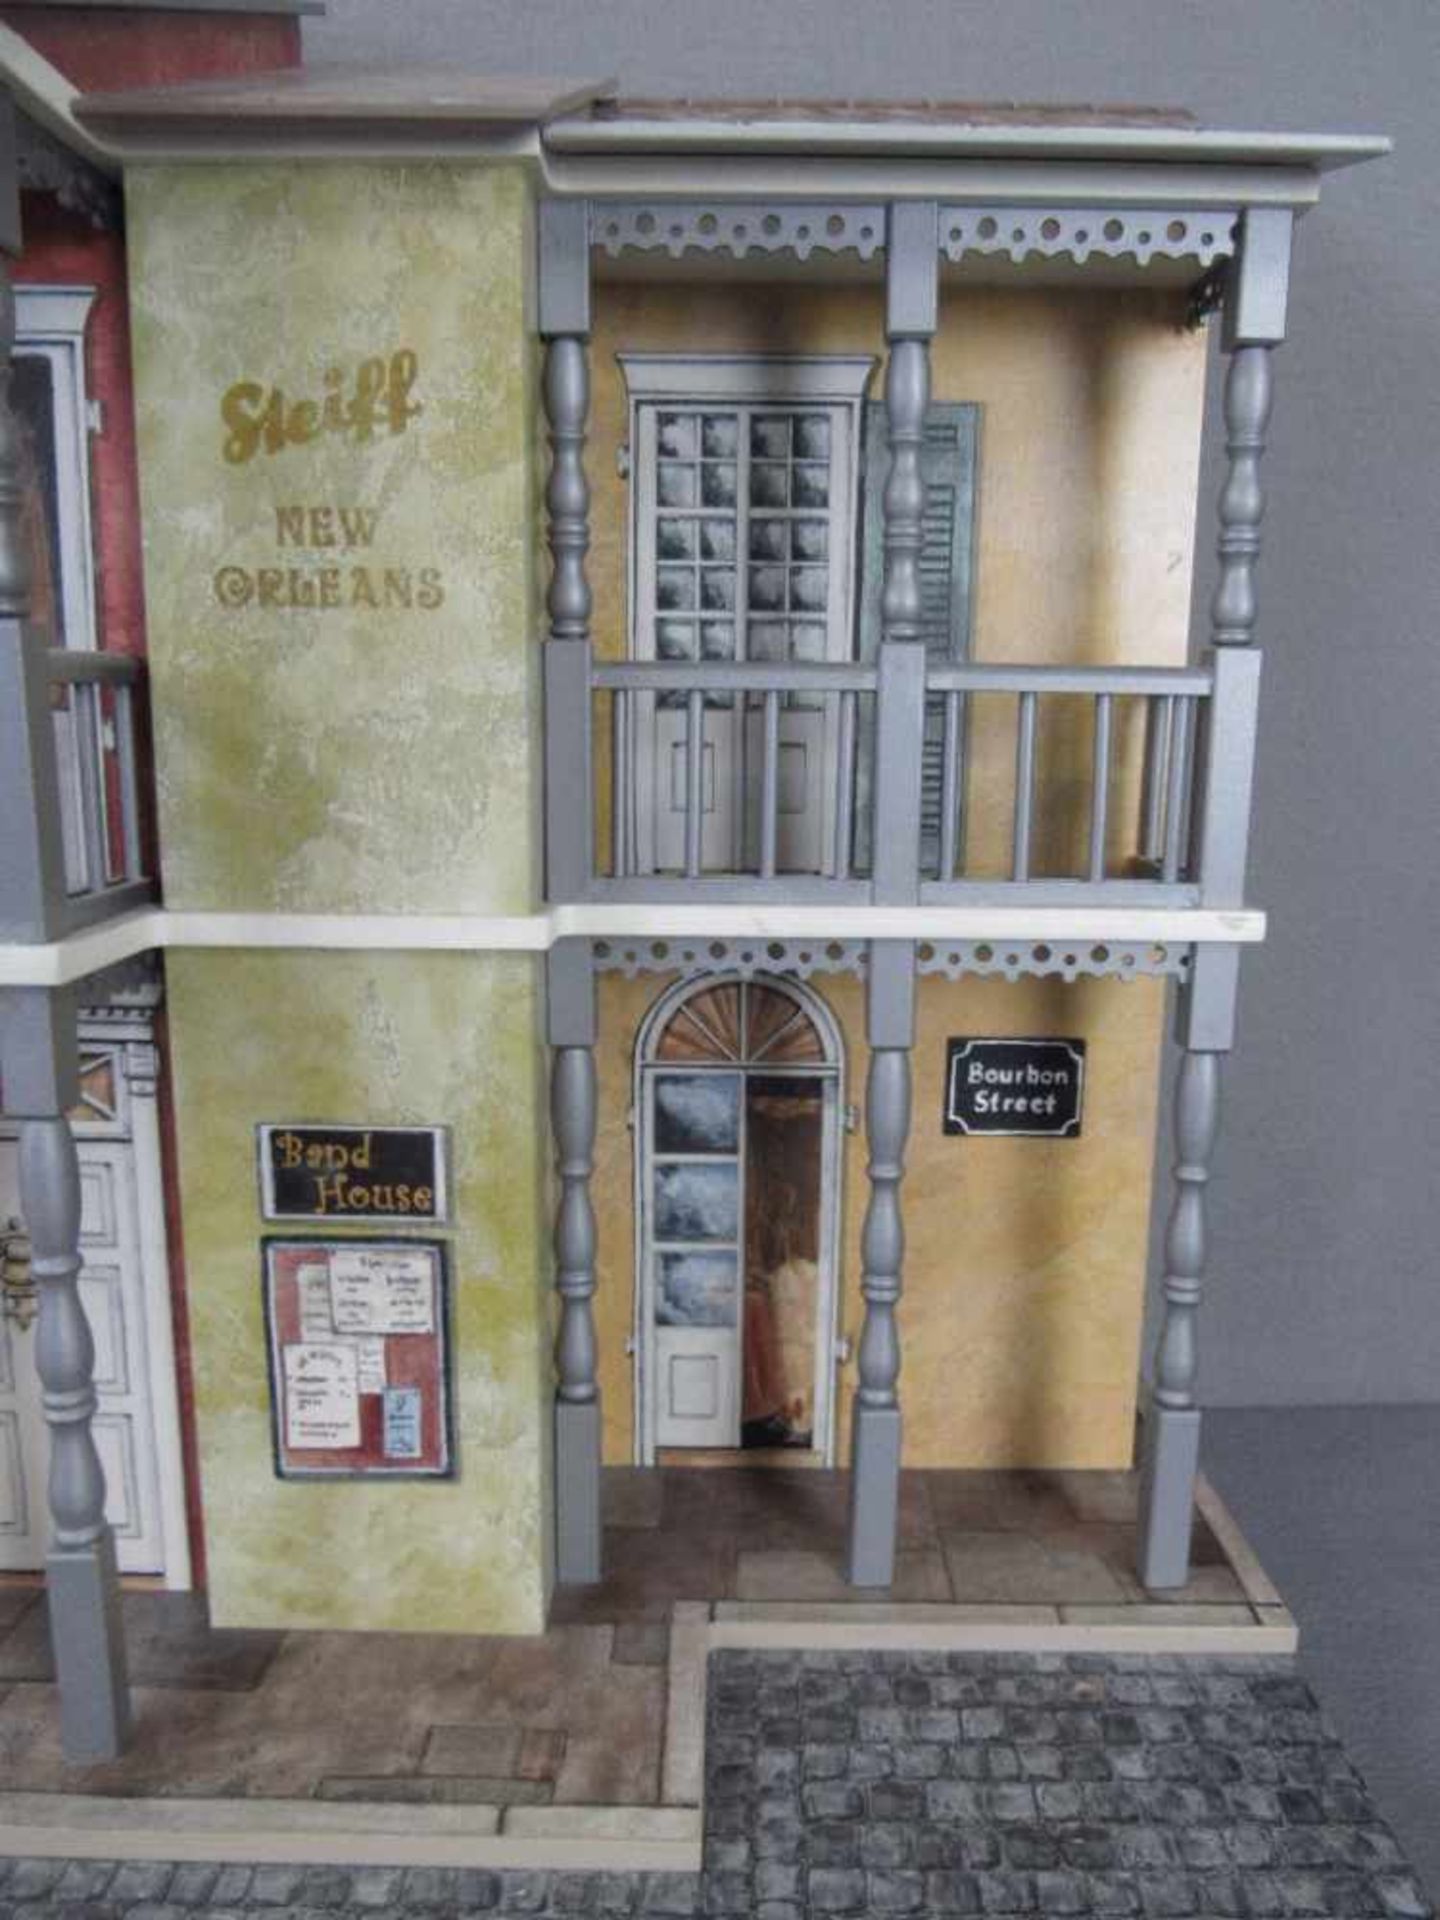 Steiff großes Diorama Display mit Spieluhr von 2001 limited edition Nr. 0675/1000 leicht bespielt - Bild 2 aus 11